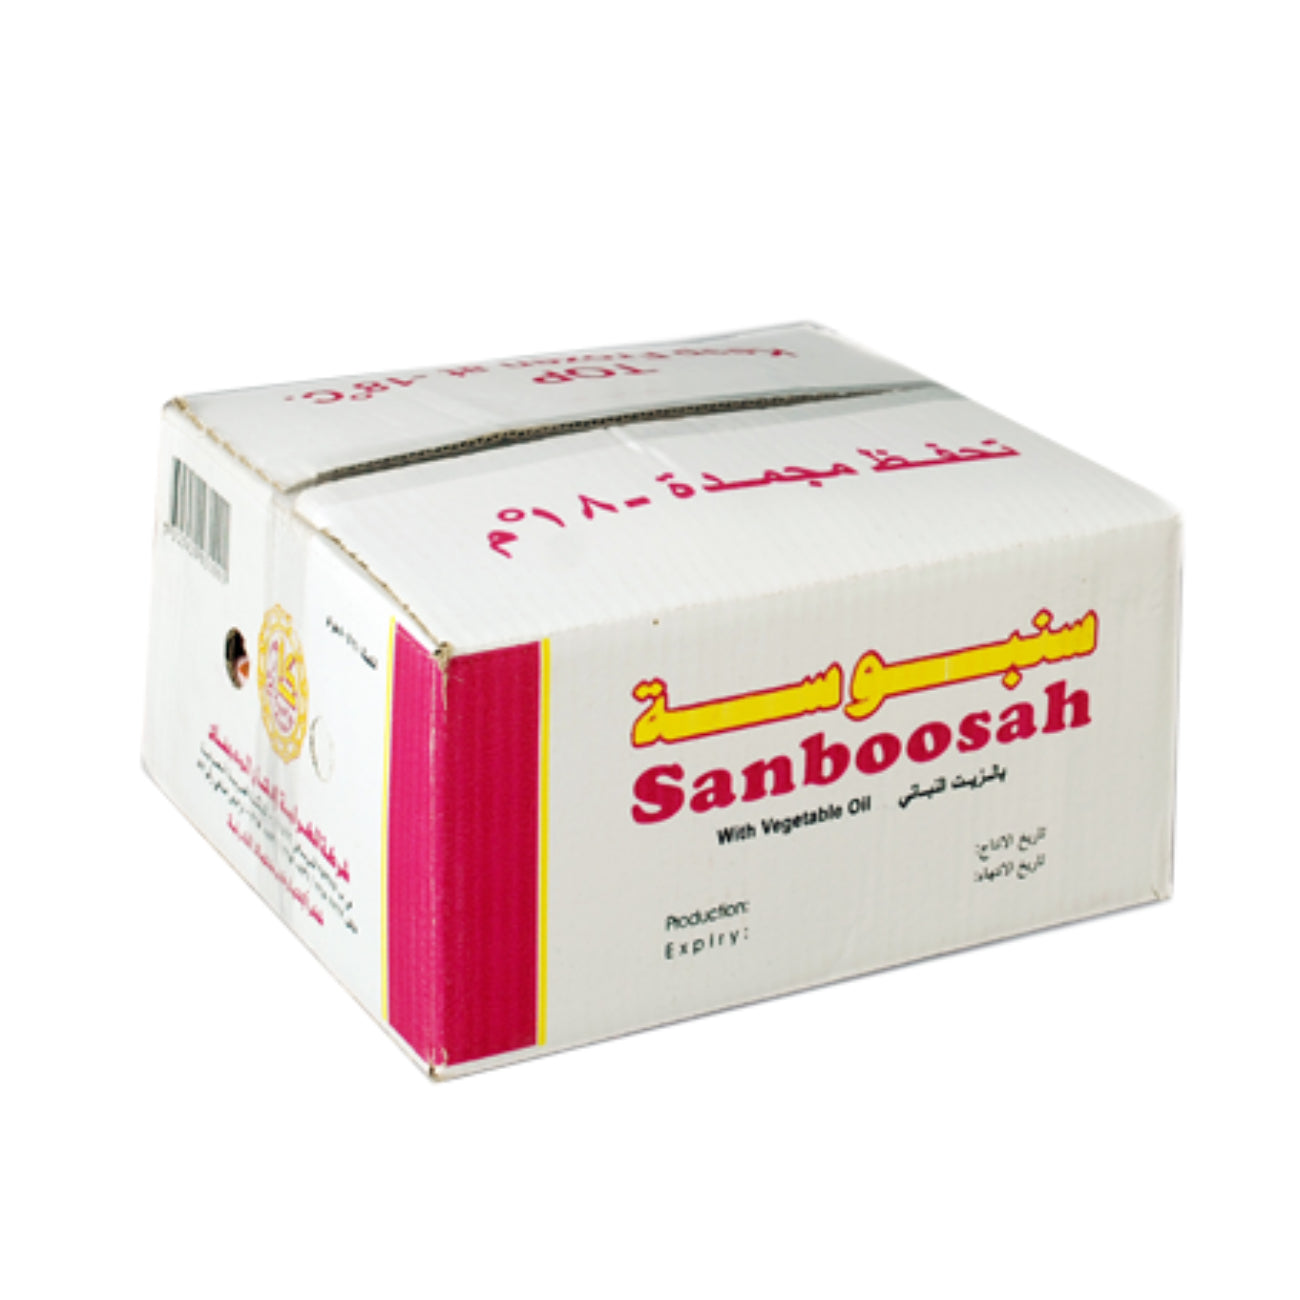 A case of 24 Packs of ALKARAMAH Frozen Samosa Dough, 500g per Each